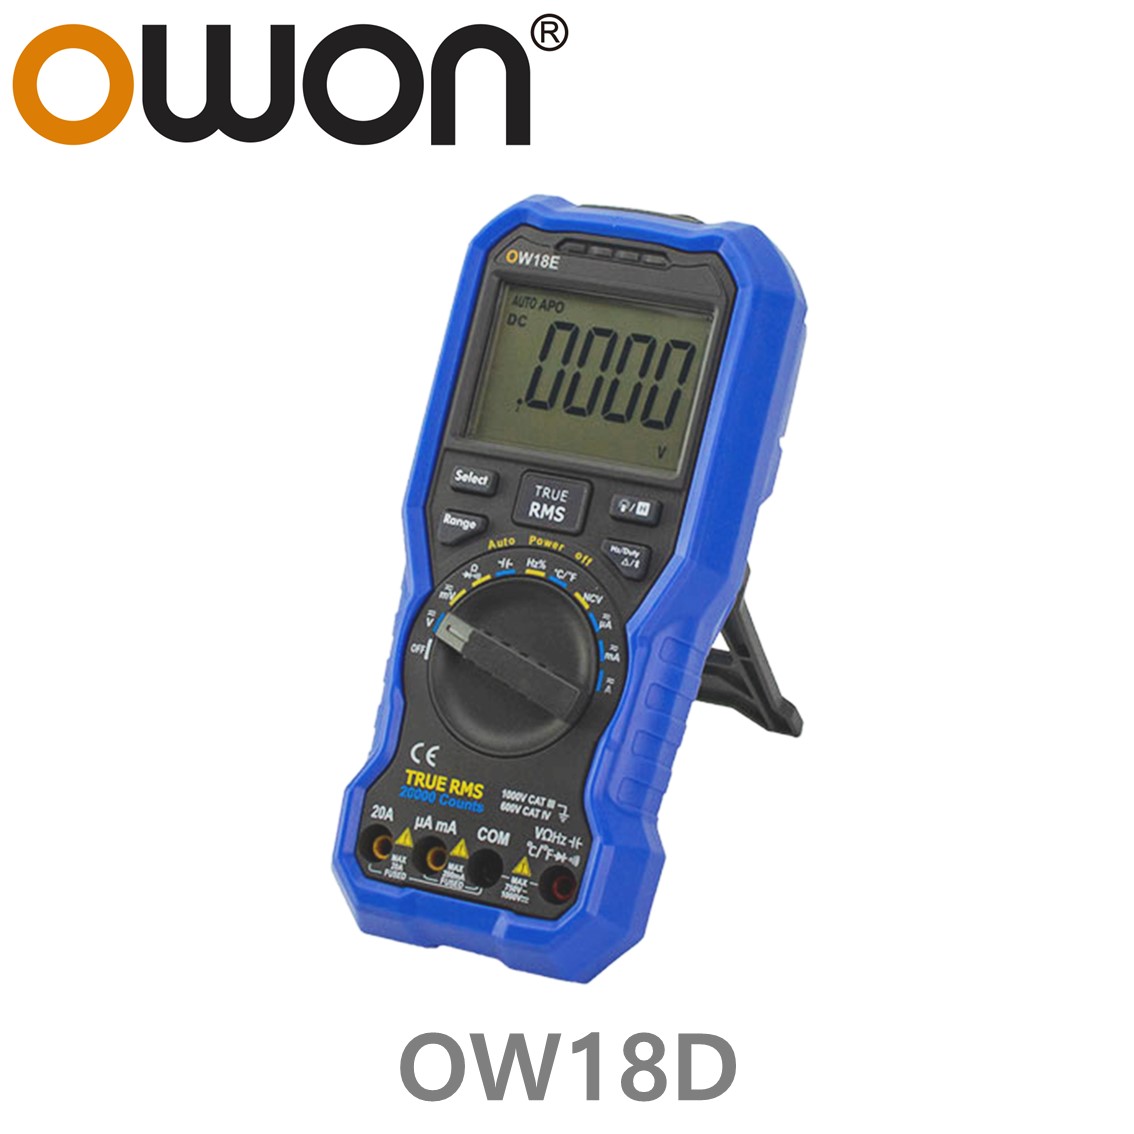 [ OWON ] OW18D 4.5 Digit 휴대용 디지탈 멀미미터, True RMS, 온도, NCV, 20A, uA, 라이트